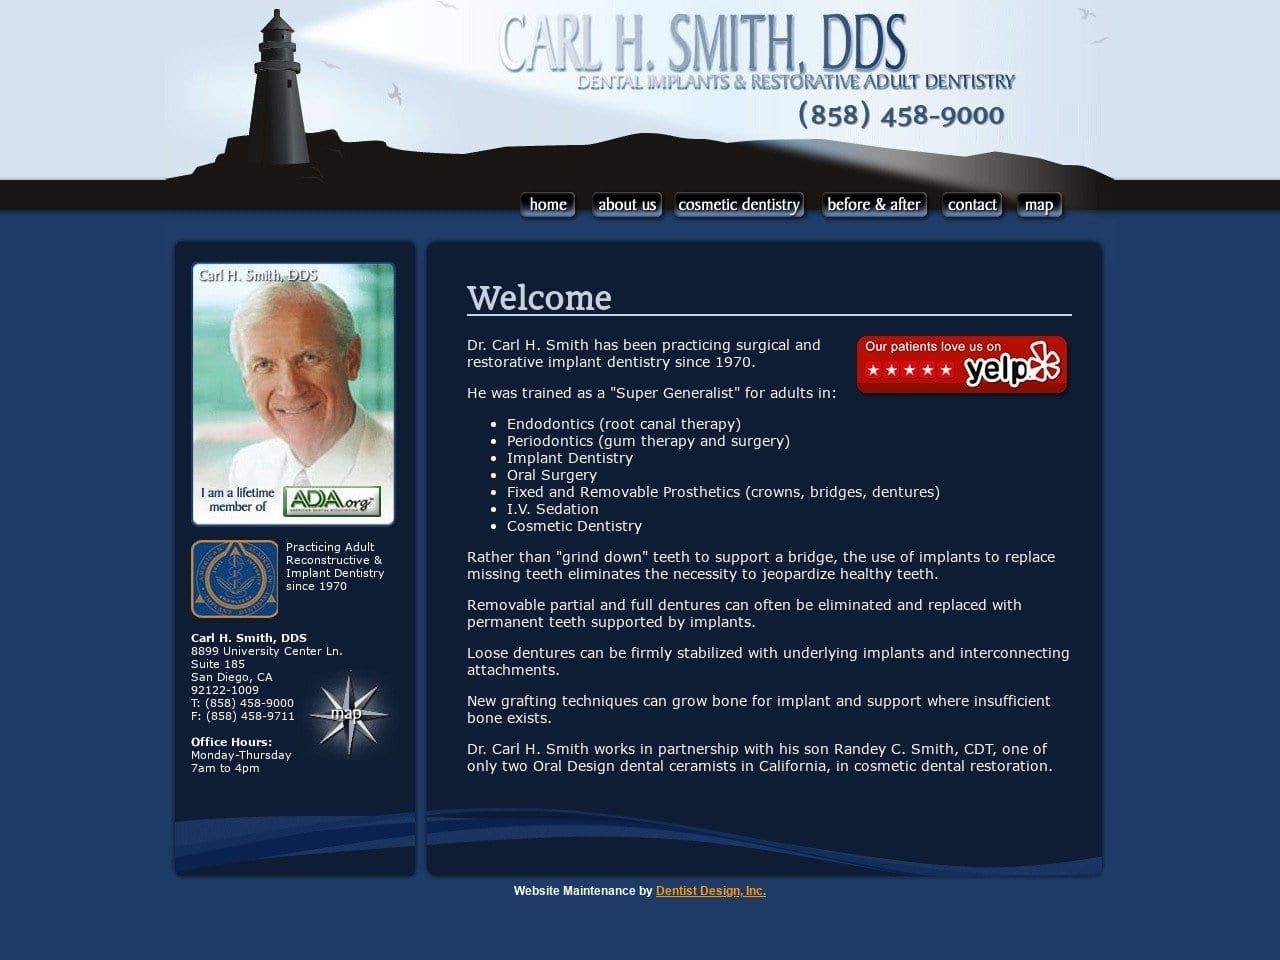 Carl H. Smith DDS Website Screenshot from carlhsmithdds.com